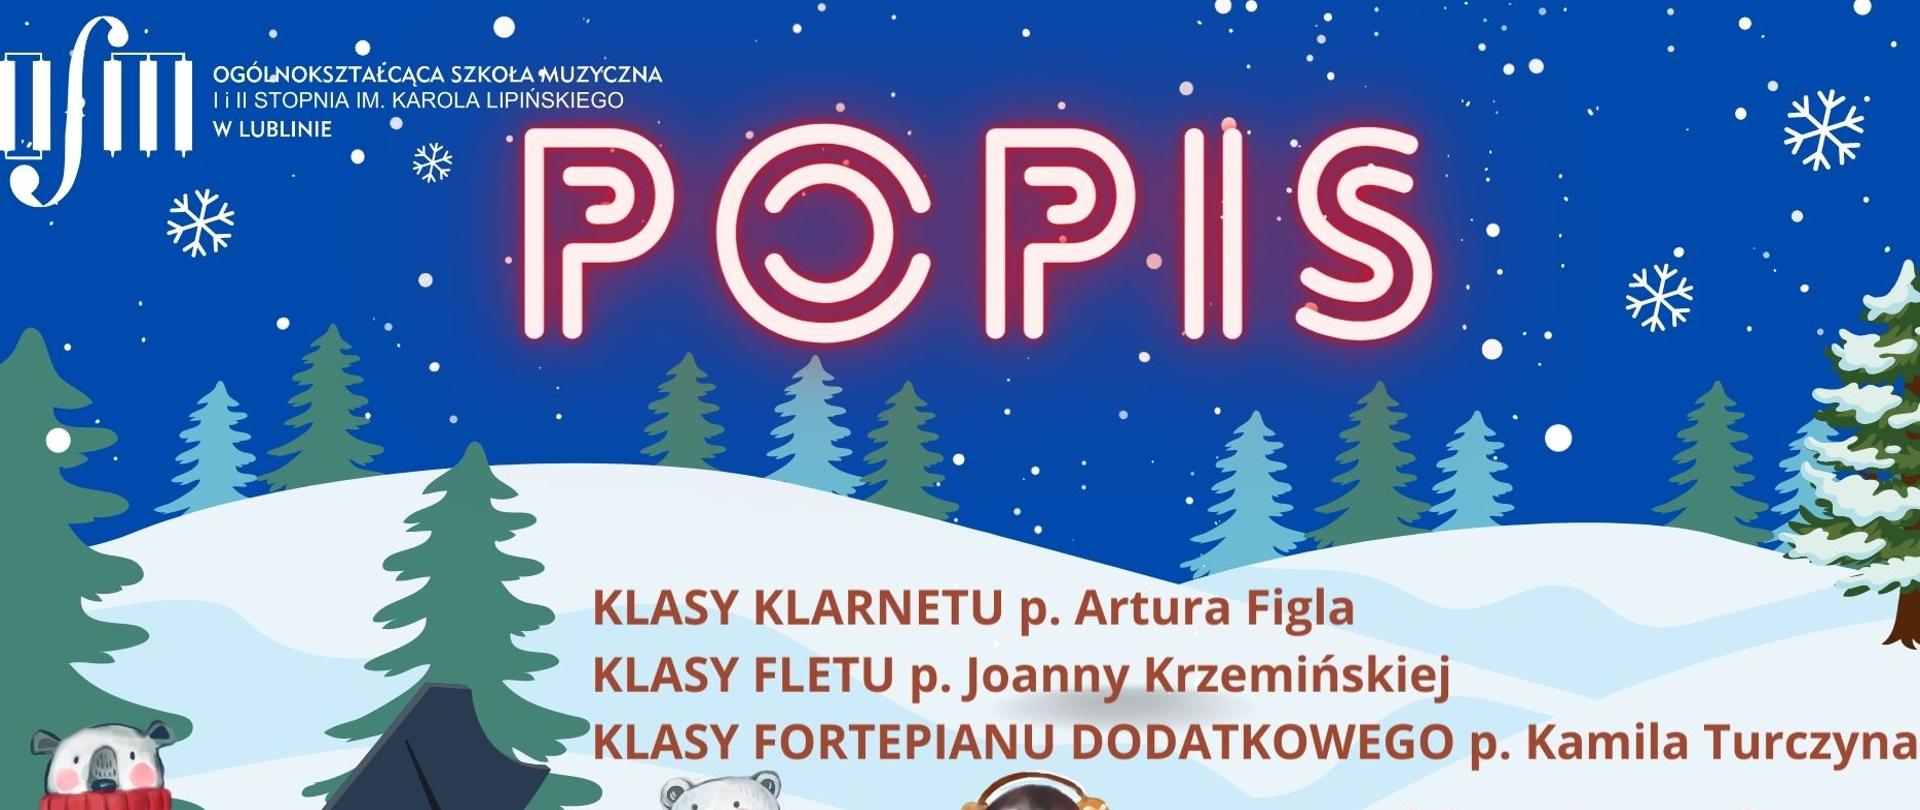 Grafika przedstawia w tle zimowy krajobraz z śnieżnymi pagórkami, zielonymi choinkami i niebieskim niebem z padającymi śniegiem. W lewym górnym rogu logo szkoły, obok dużymi czerwonymi literami napis POPIS, poniżej mniejszymi literami klasy fortepianu p. Artura Fila, klasy fortepianu p. Joanny Krzemińśkiej, klasy fortepianu dodatkowego p. Kamila Turczyna, 13 grudnia 2022 (wtorek), godzina 16:30, sala 119, Serdecznie zapraszamy